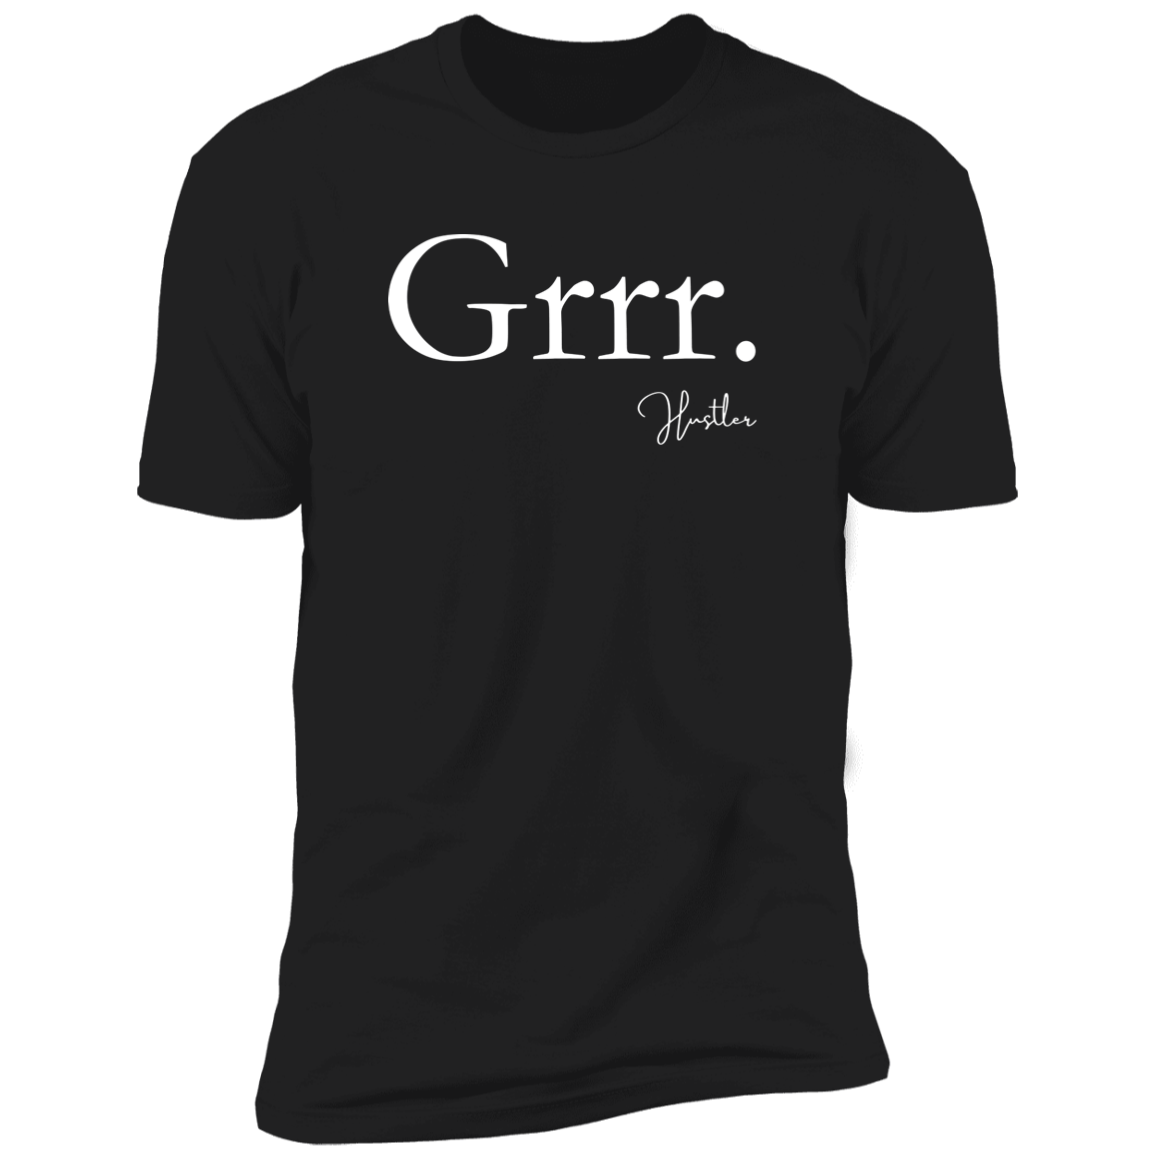 Grrr T-Shirt